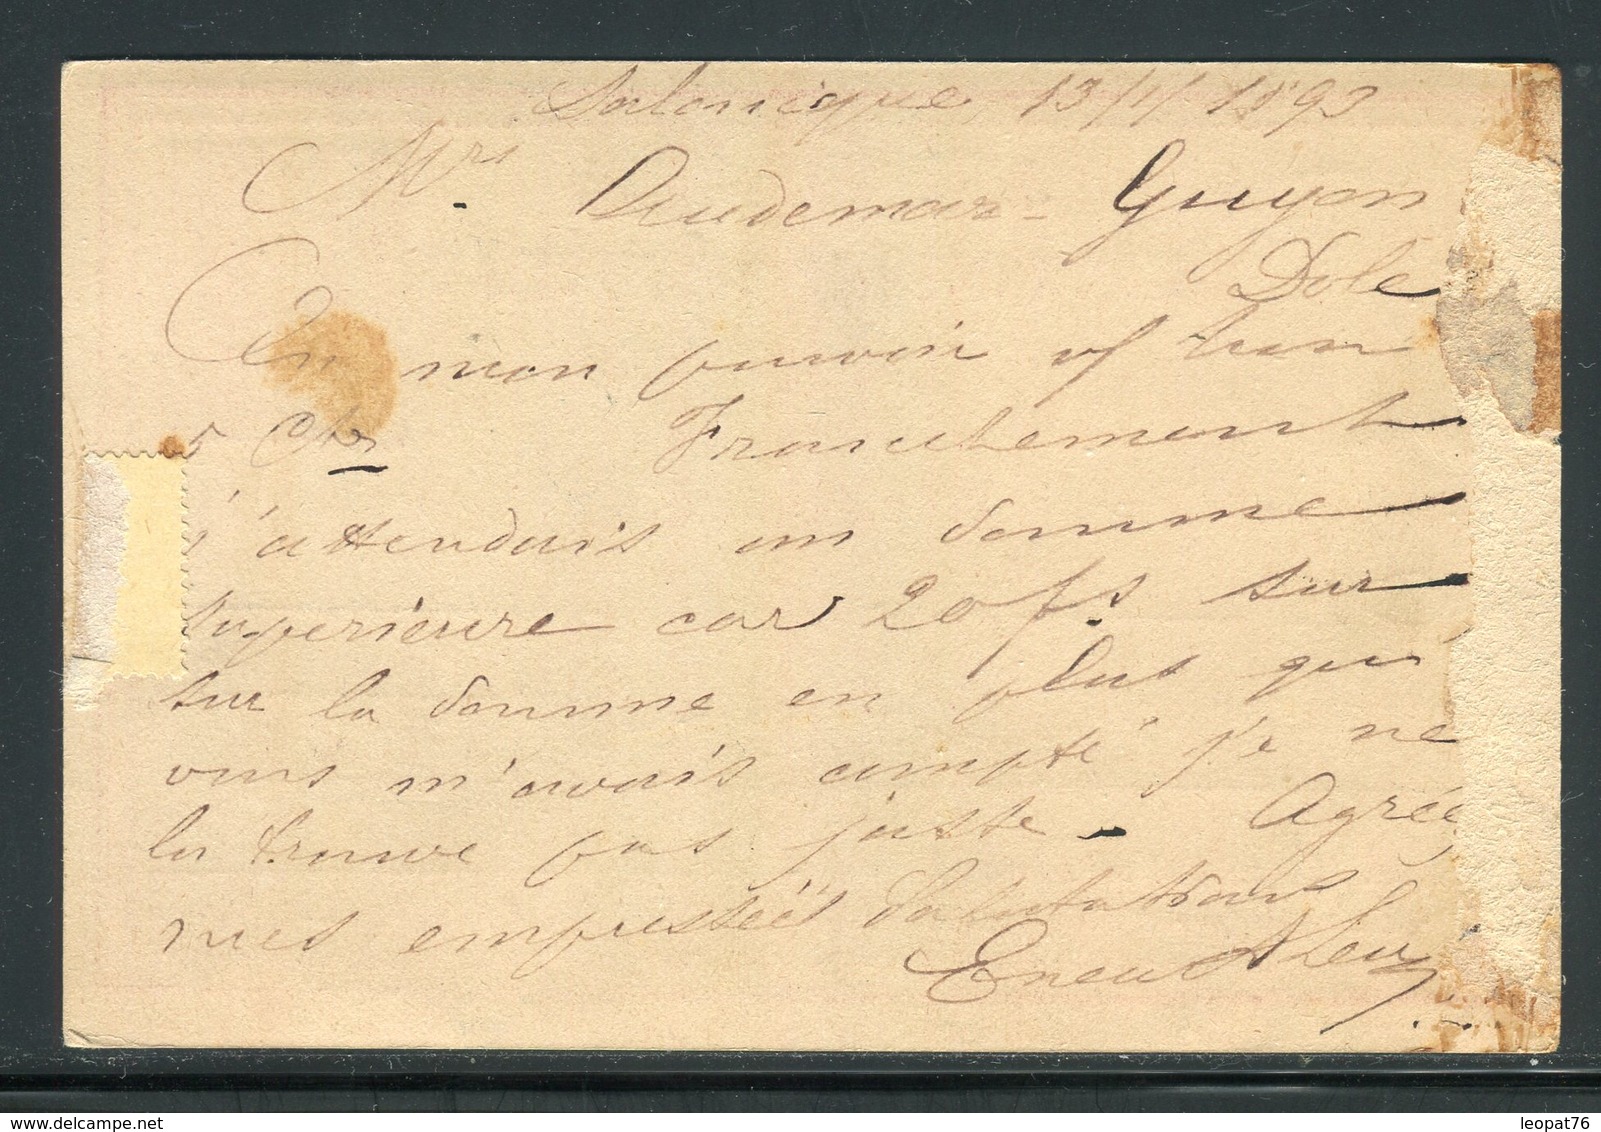 Turquie - Entier Postal De Salonique Pour La France En 1893 -  Réf J178 - Storia Postale